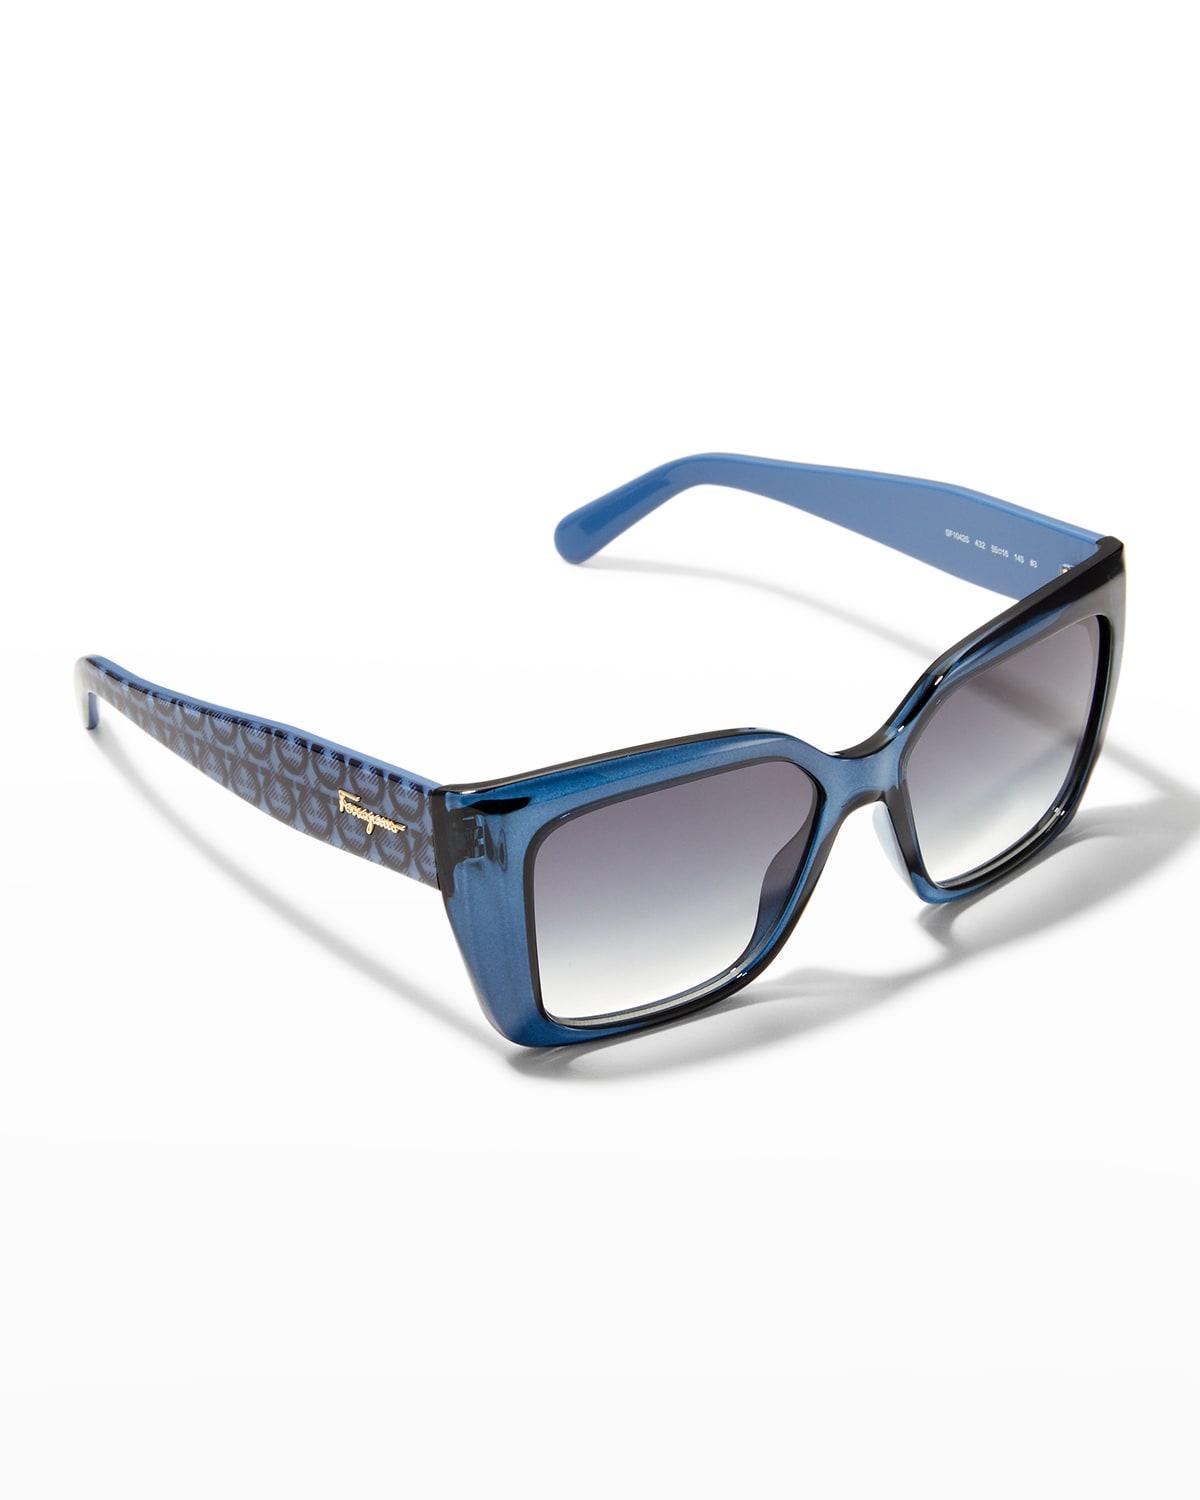 FERRAGAMO Gancini 55mm Gradient Rectangular Sunglasses Product Image